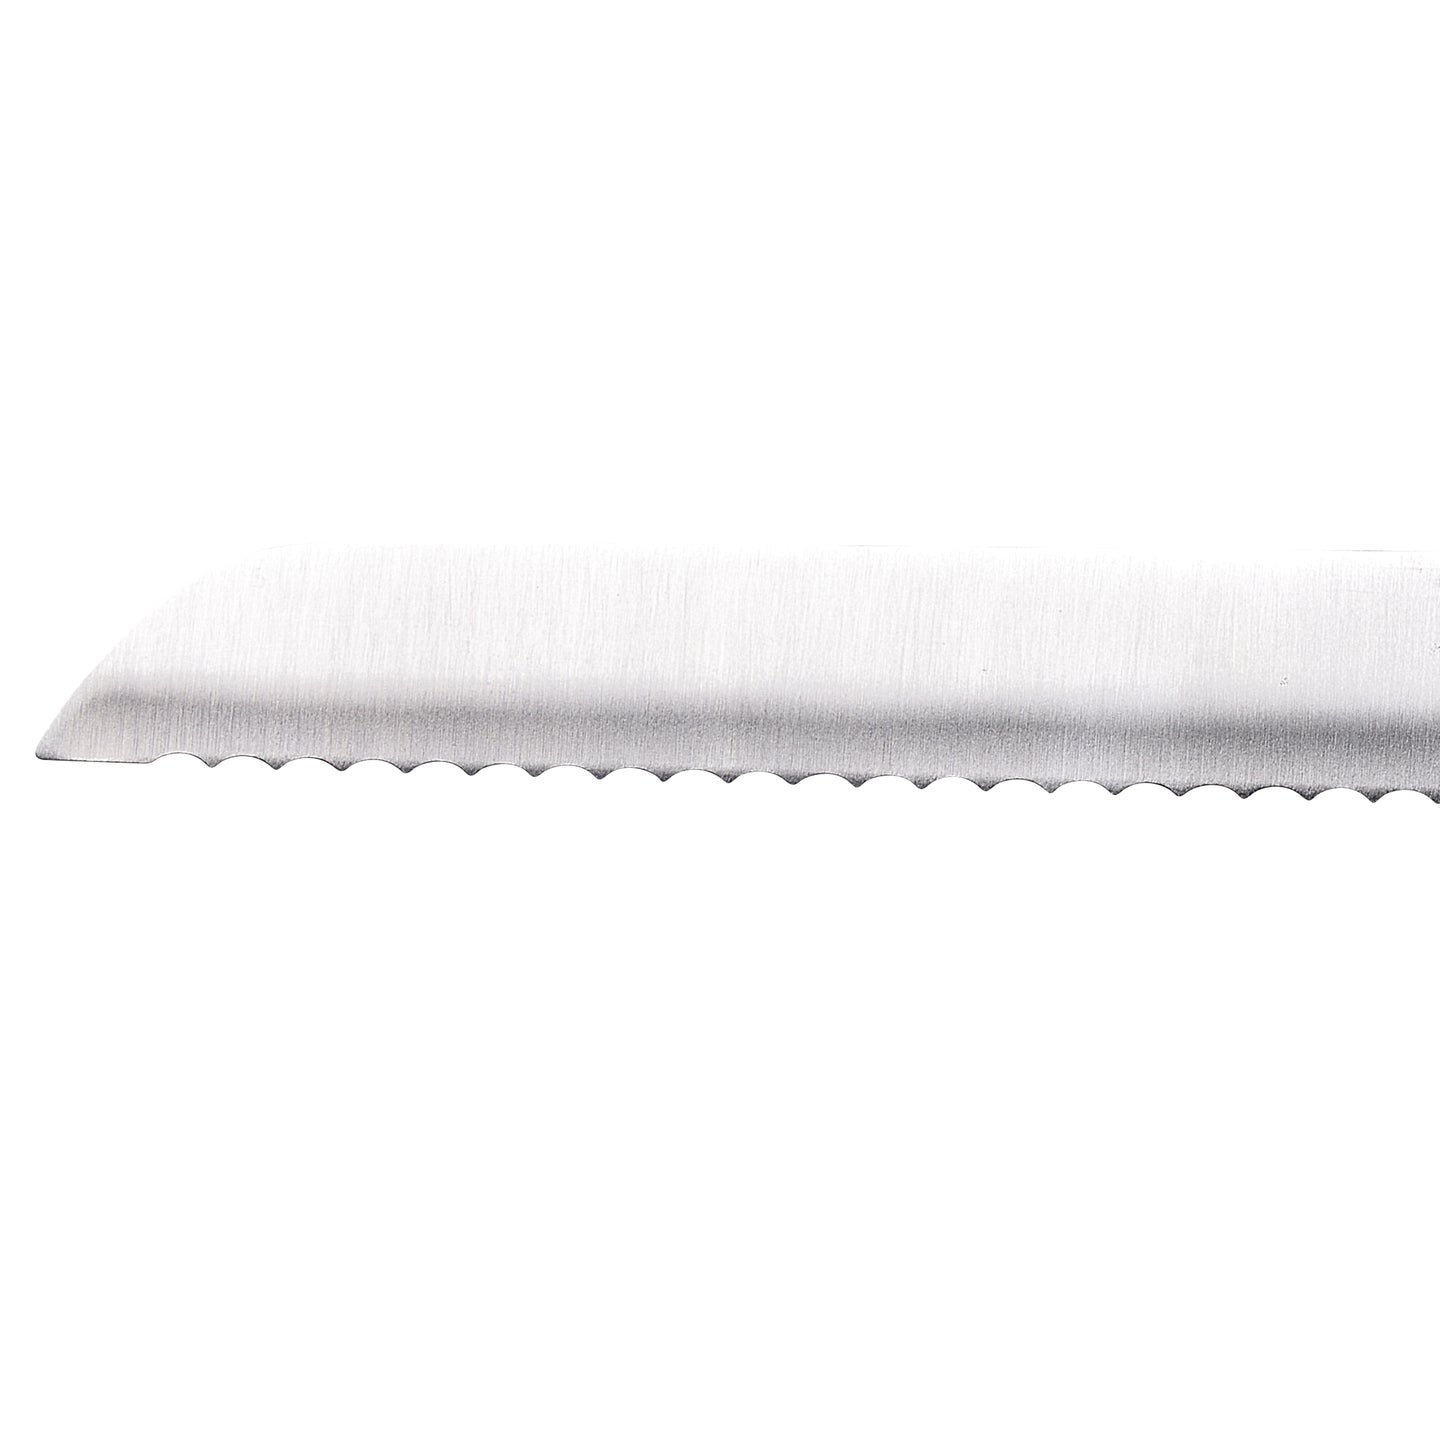 Cuchillo panero San ignacio Expert 20 cm (3)